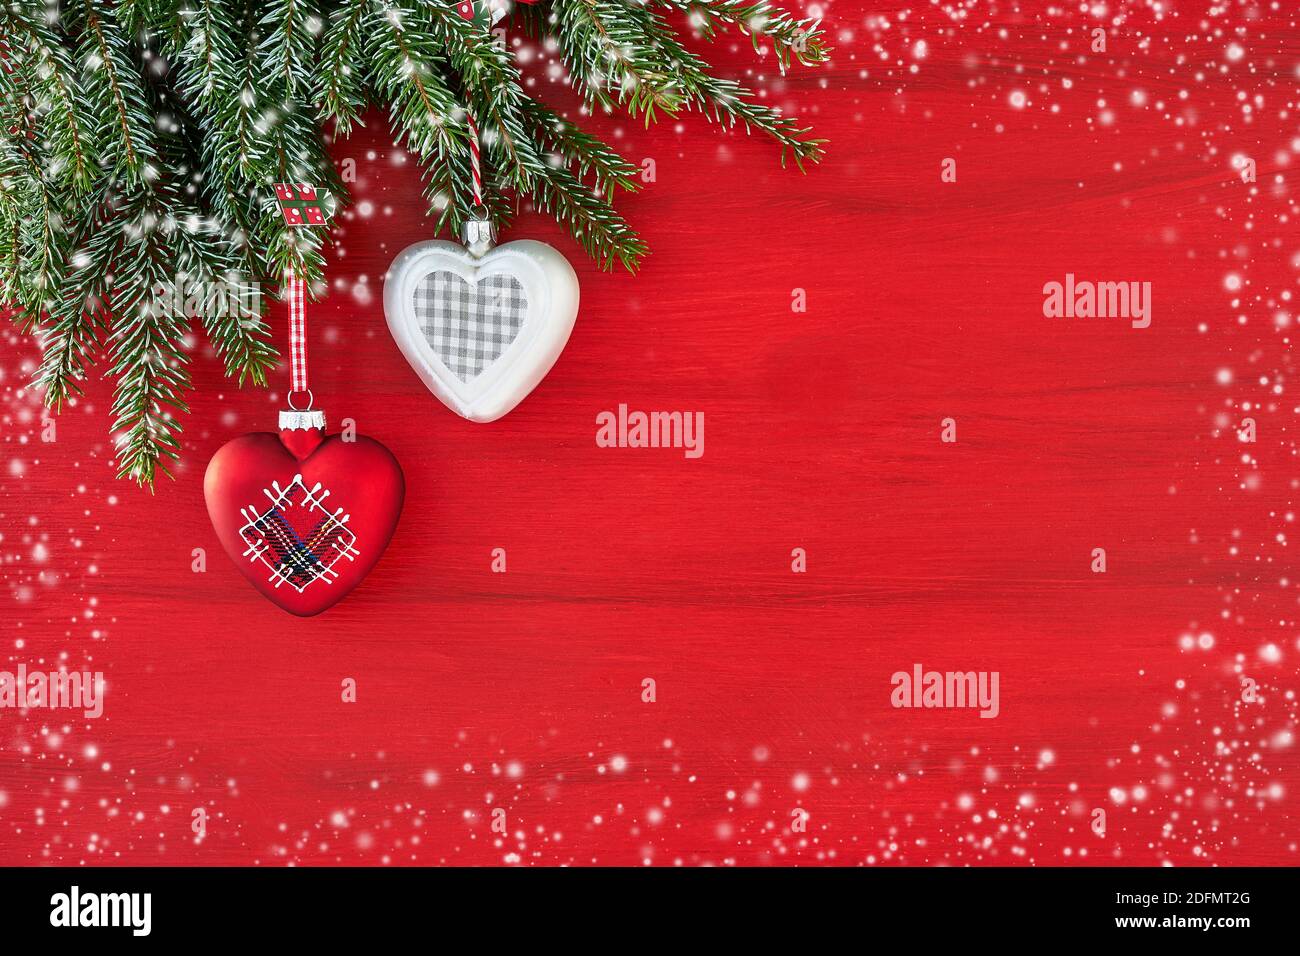 Weihnachtskarte. Tannenzweig mit Dekoration. Rote Weihnachten Hintergrund. Platz kopieren, Schneetextur. Stockfoto